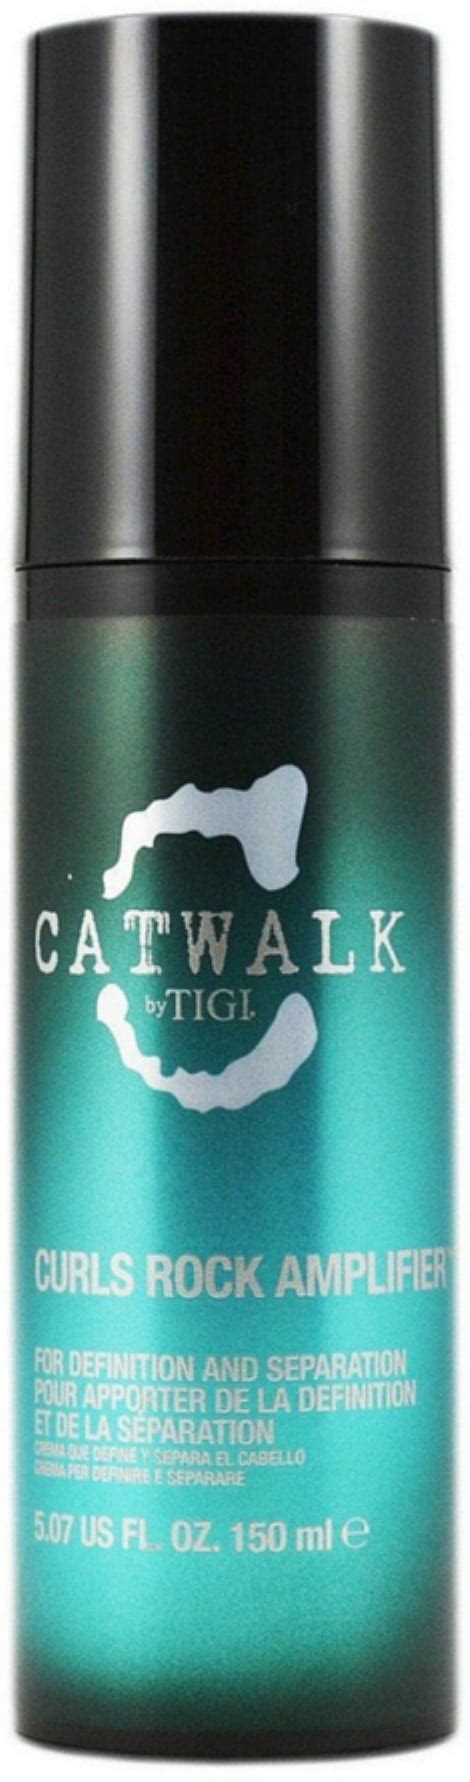 TIGI Catwalk Curls Rock Amplifier 5 07 Oz Walmart Com